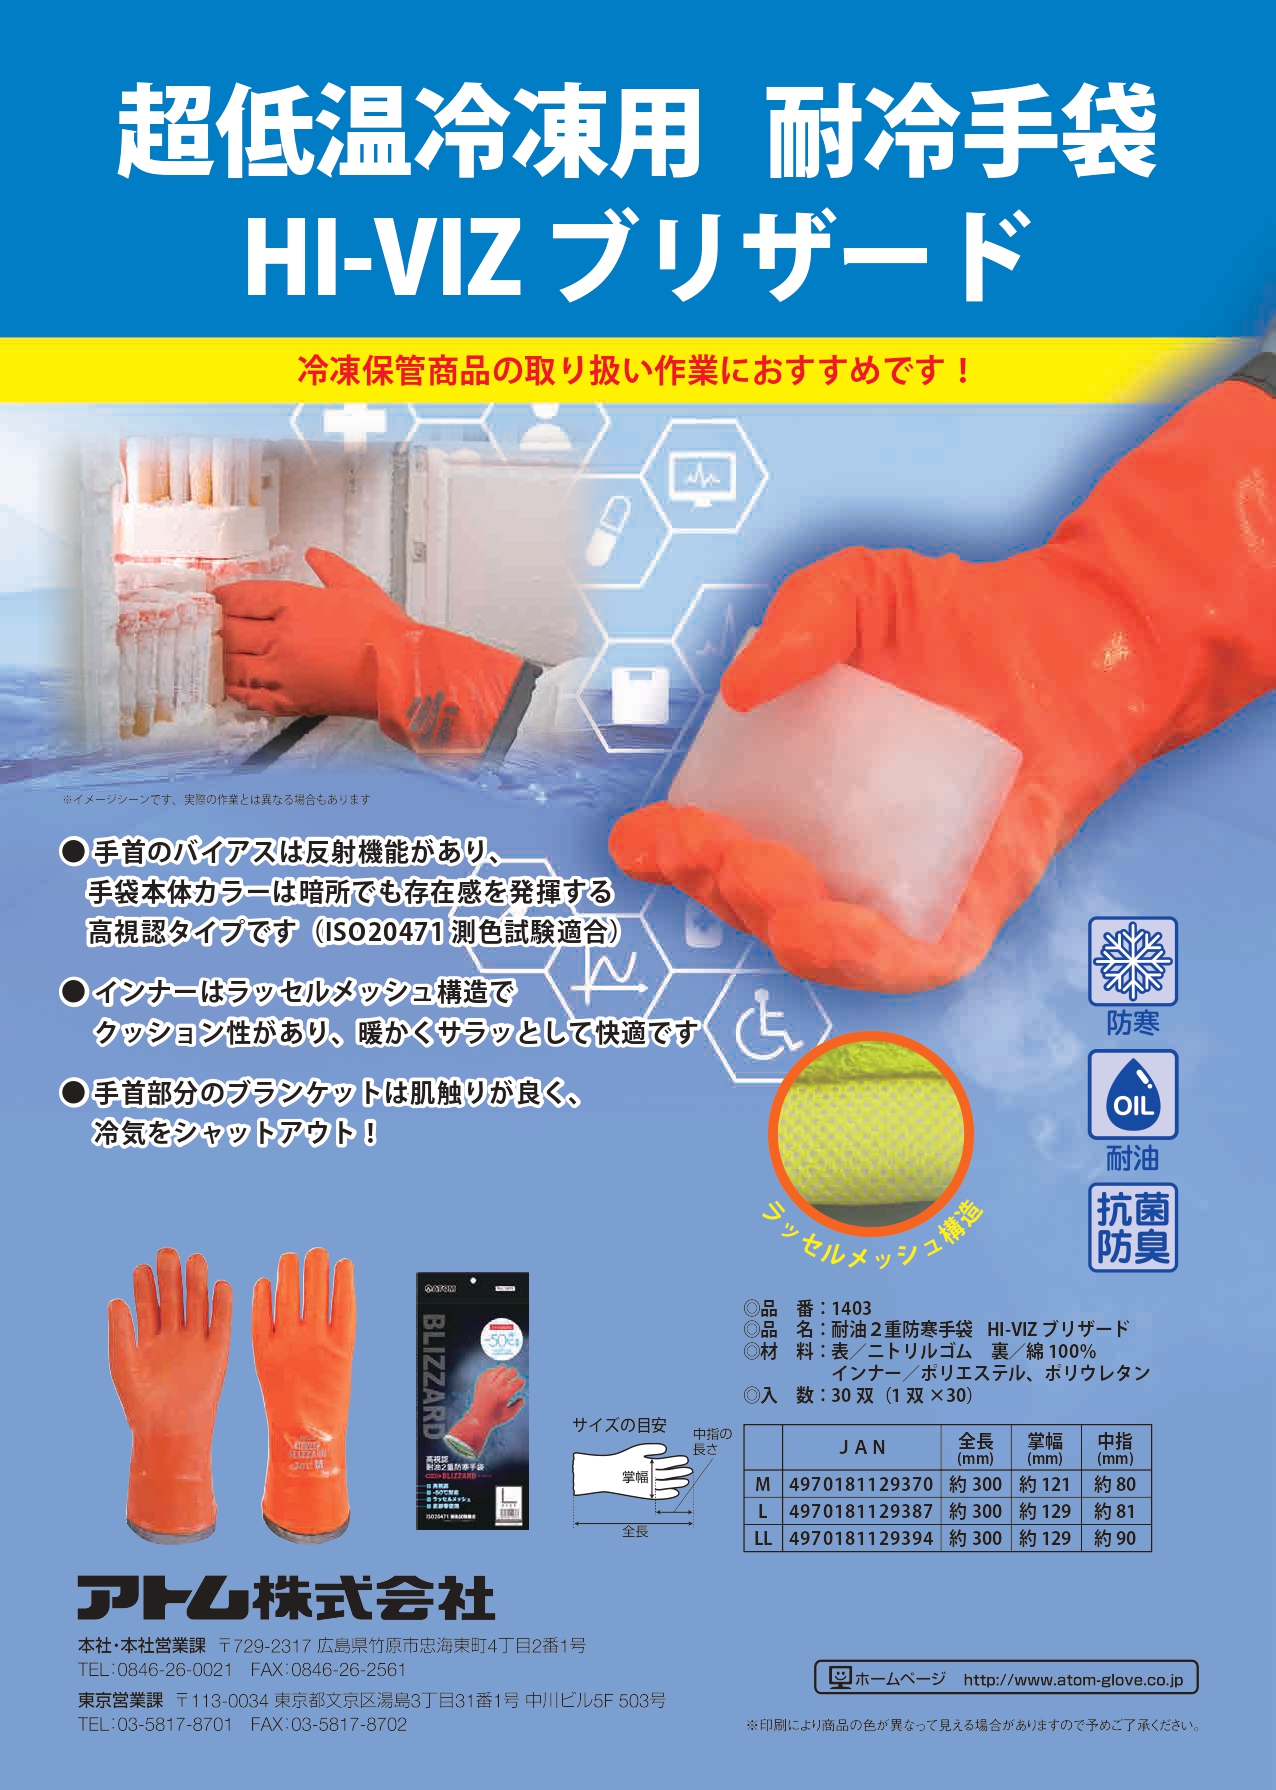 耐冷手袋 HI-VIZ ブリザード | アトム株式会社